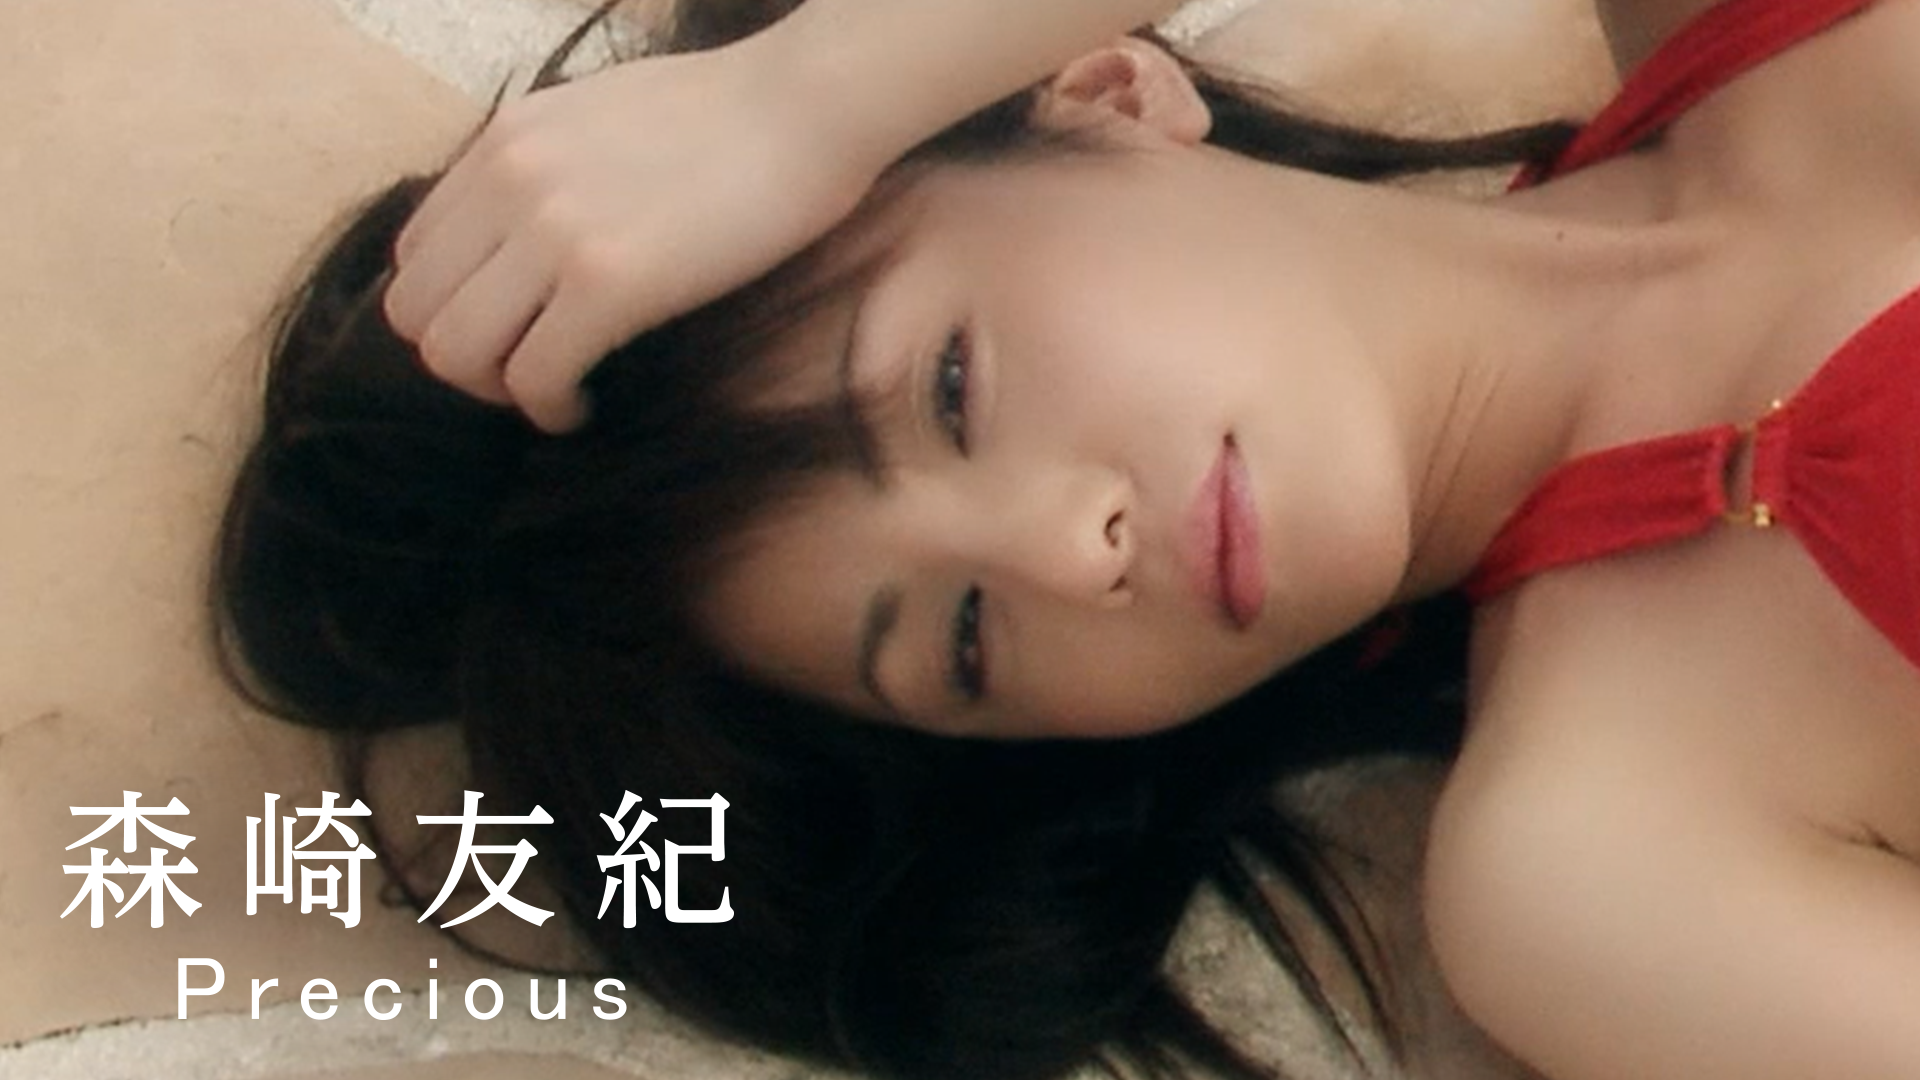 森崎友紀『Precious』(その他 / 2013) - 動画配信 | U-NEXT 31日間無料トライアル